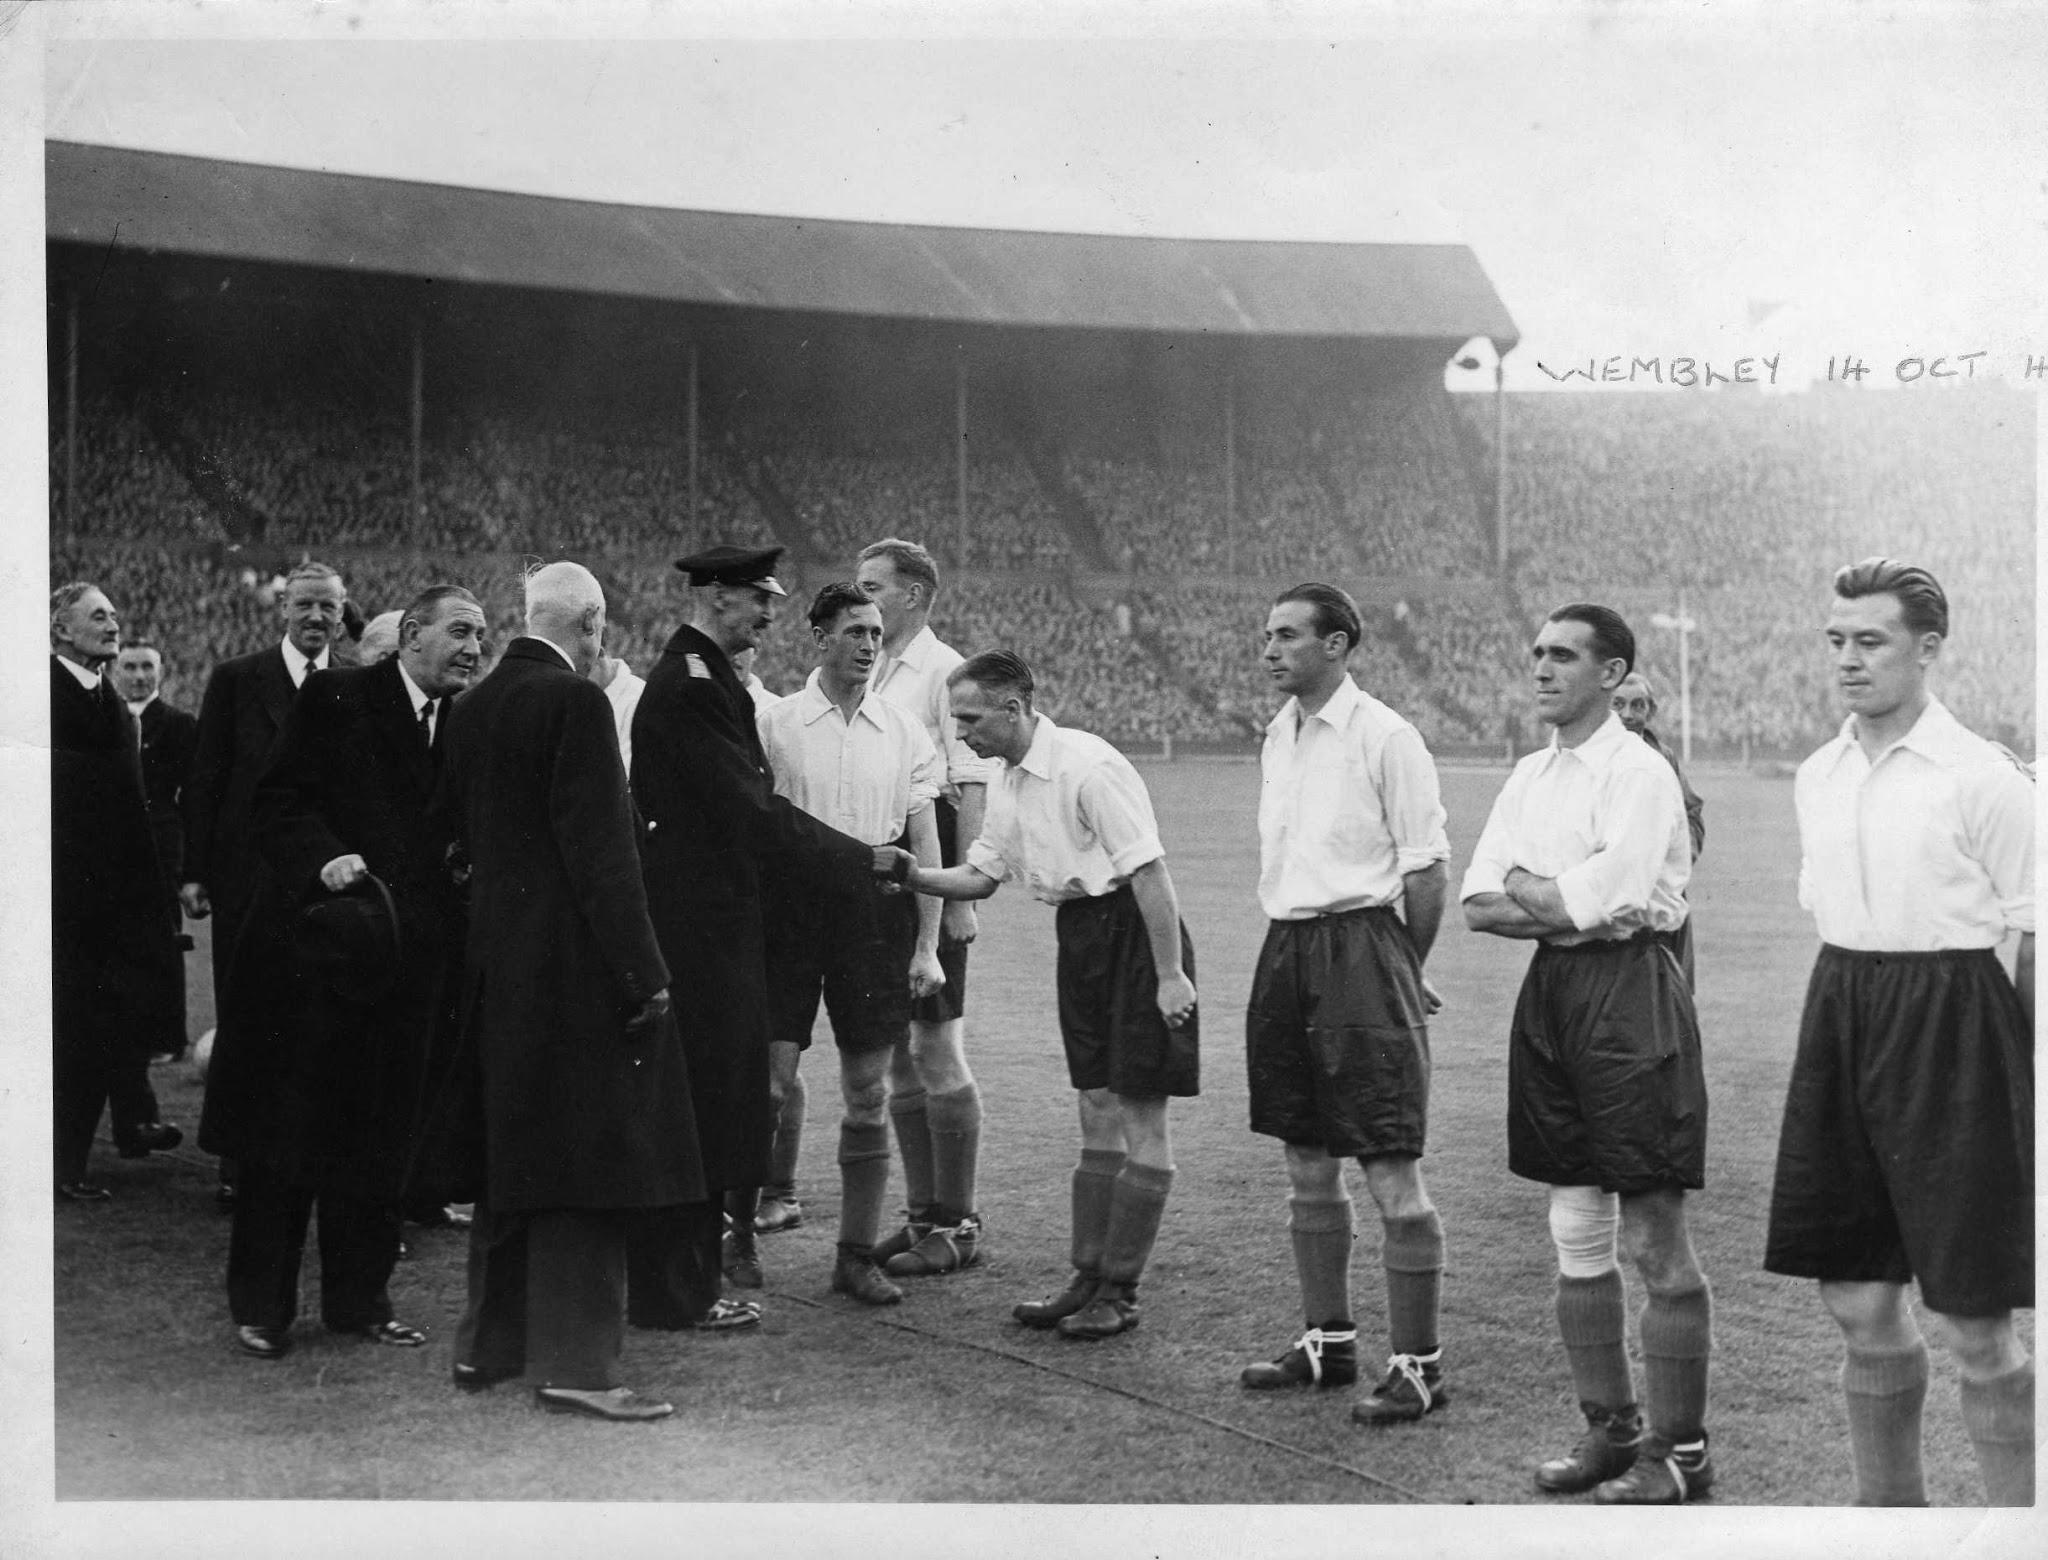 Frank Soo står helt til høyre på bildet. Her fra en landskamp på Wembley.